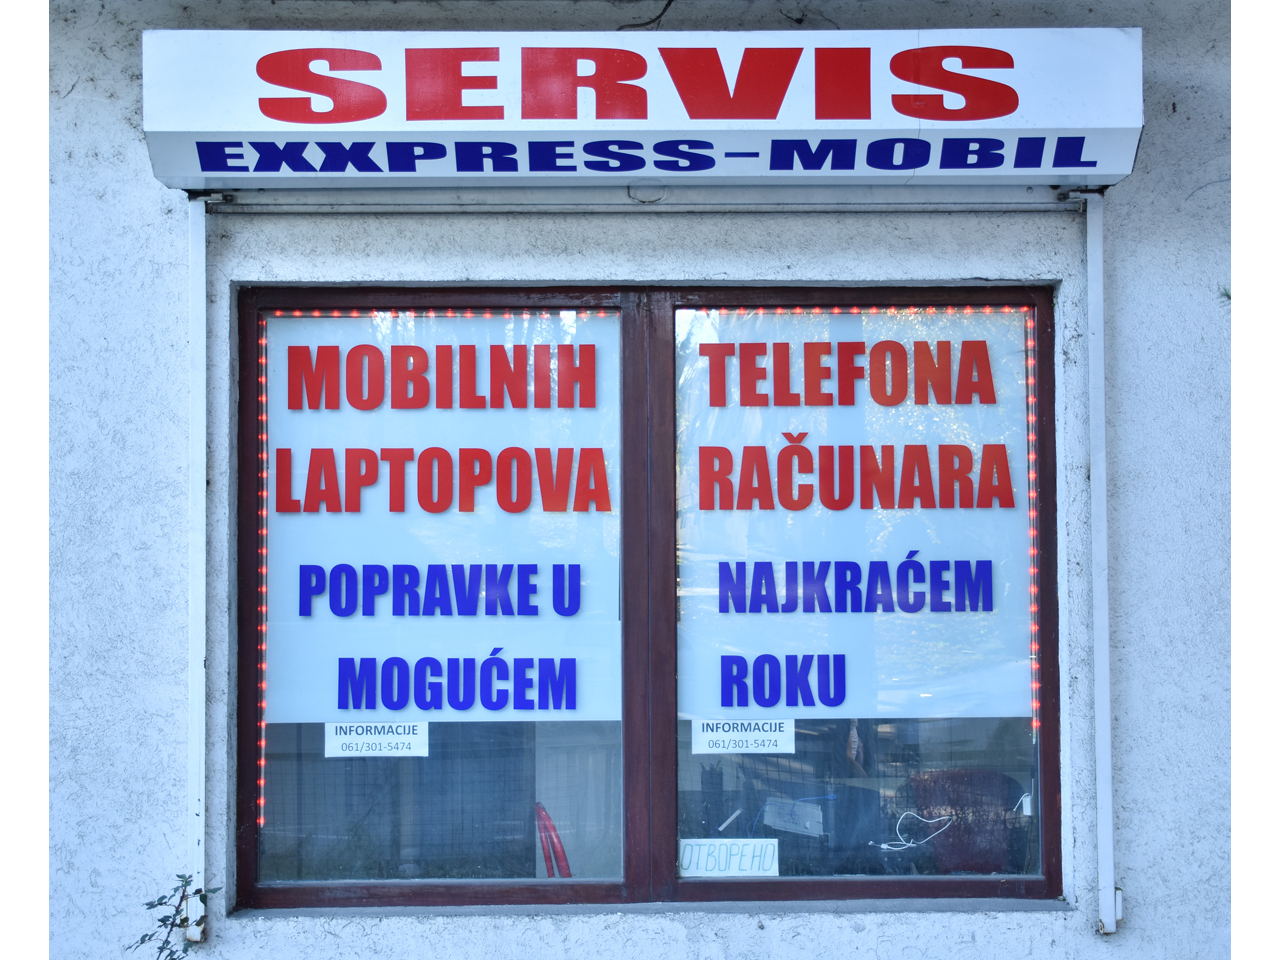 EXXPRESS - MOBIL Servisi mobilnih telefona Beograd